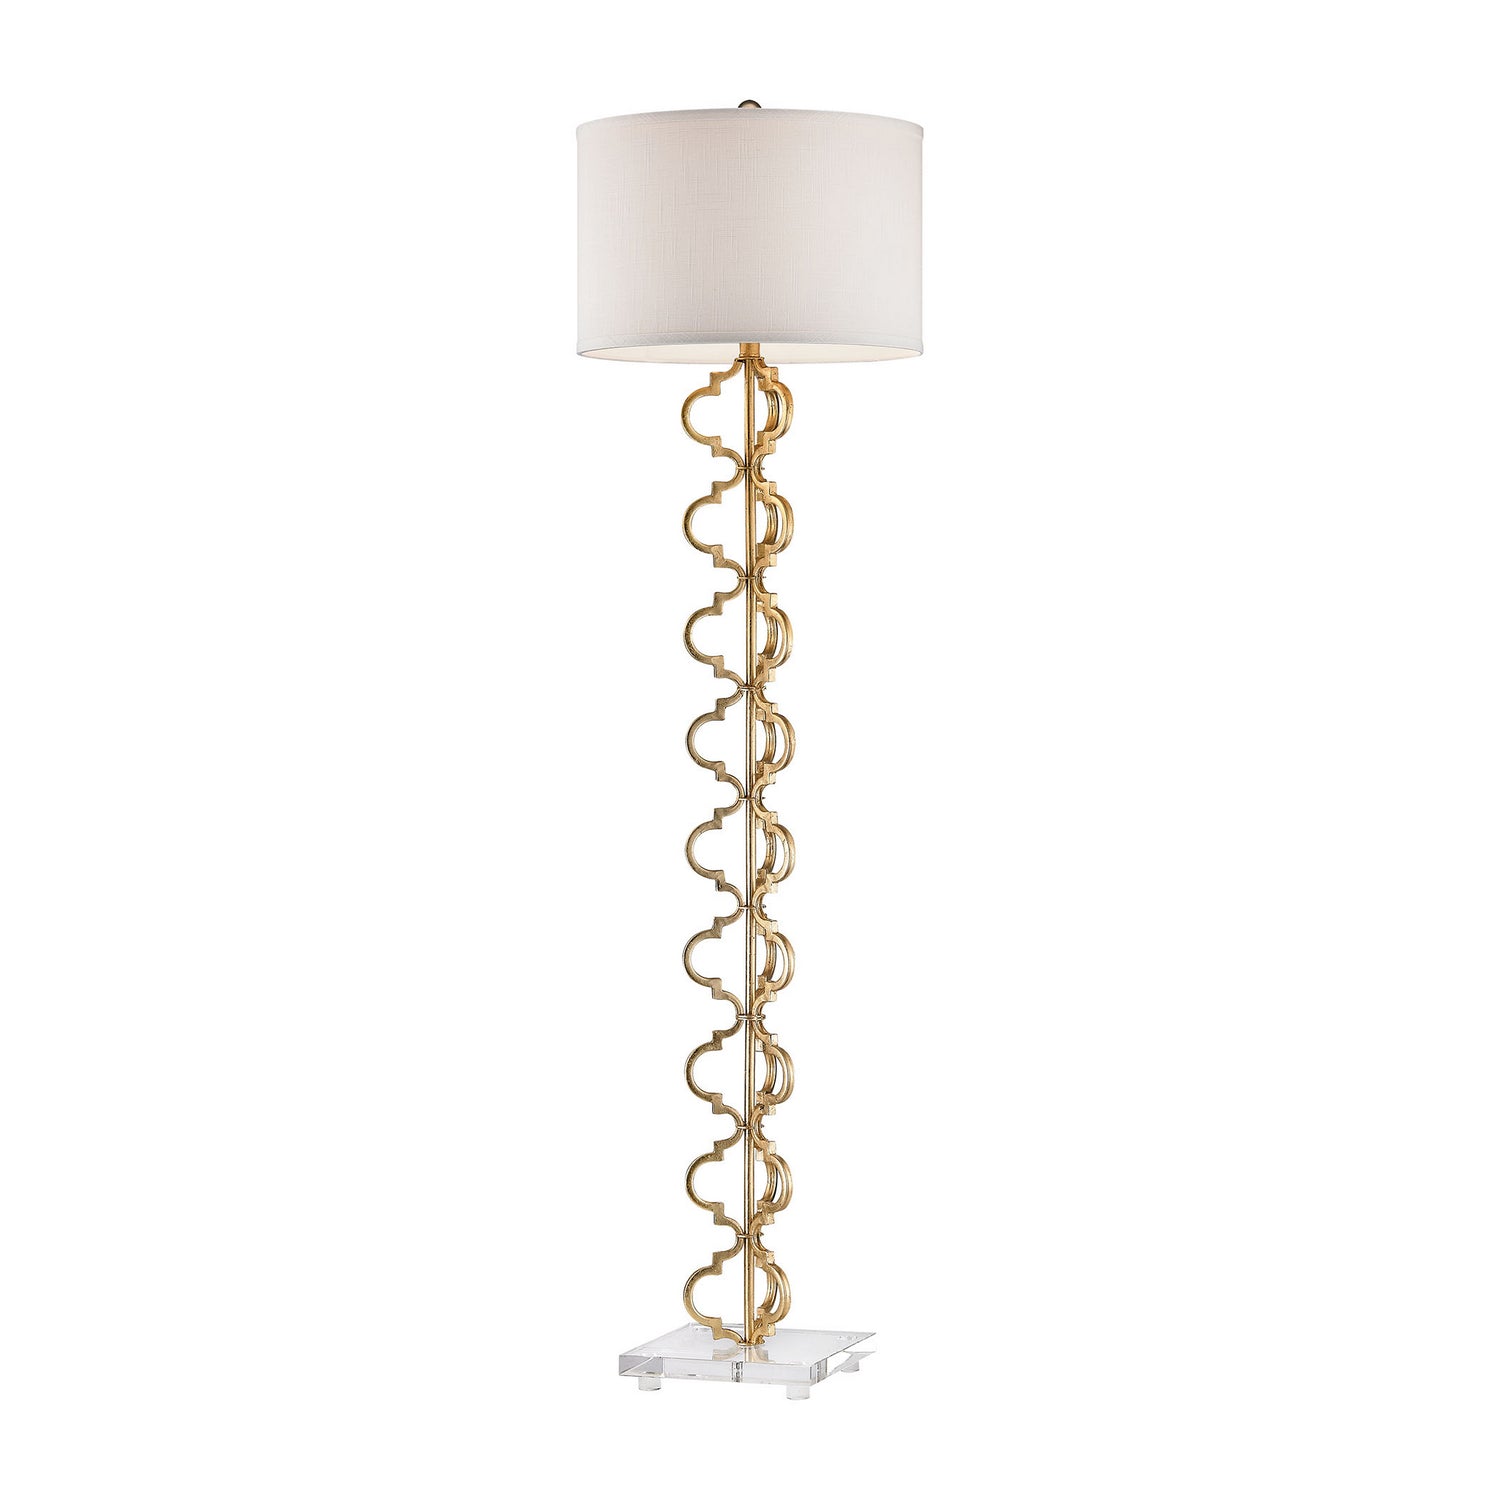 ELK Home - D2932 - One Light Floor Lamp - Castile - Gold Leaf